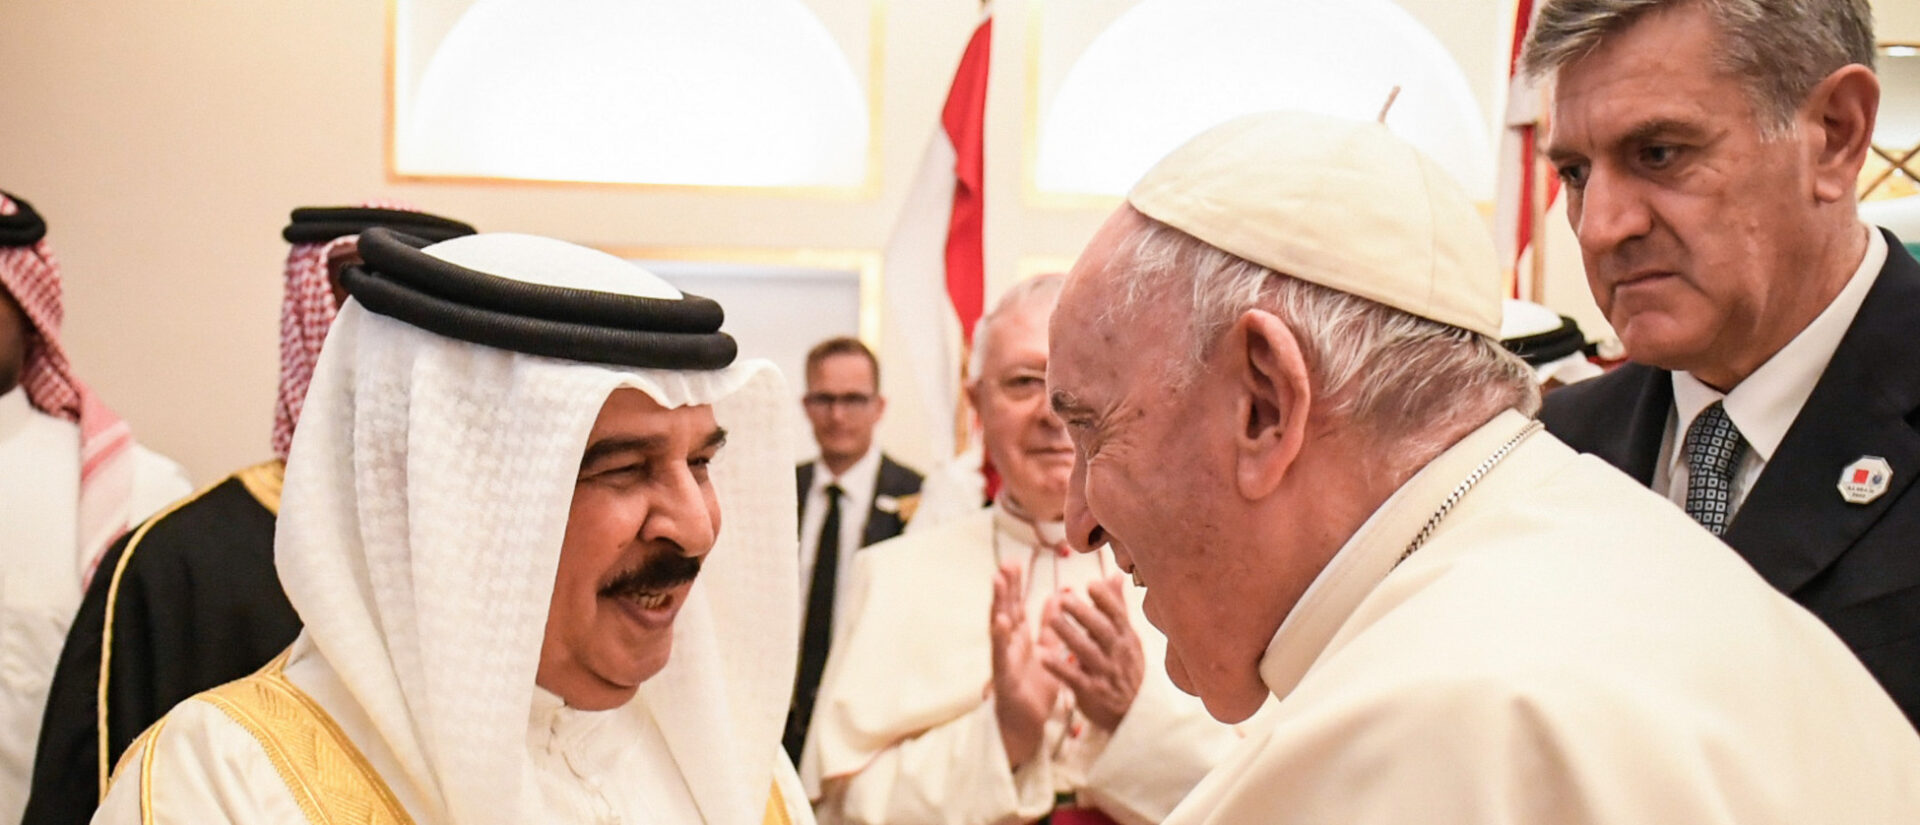 Papst Franziskus und der König von Bahrain. In der Mitte, halb verdeckt: Bischof Paul Hinder.